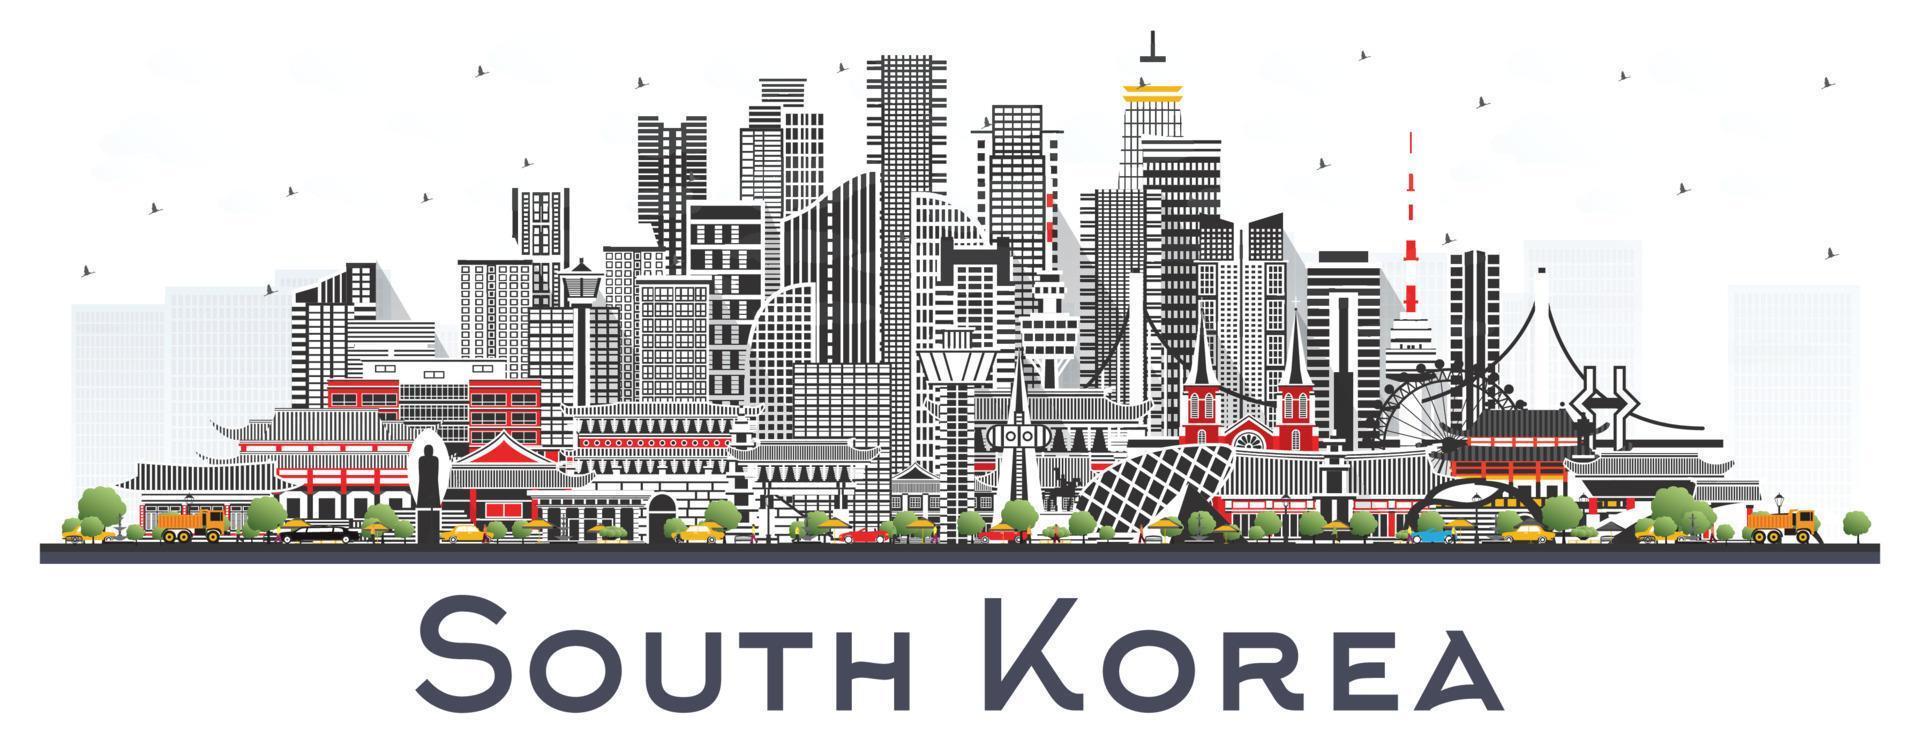 söder korea stad horisont med grå byggnader isolerat på vit. vektor